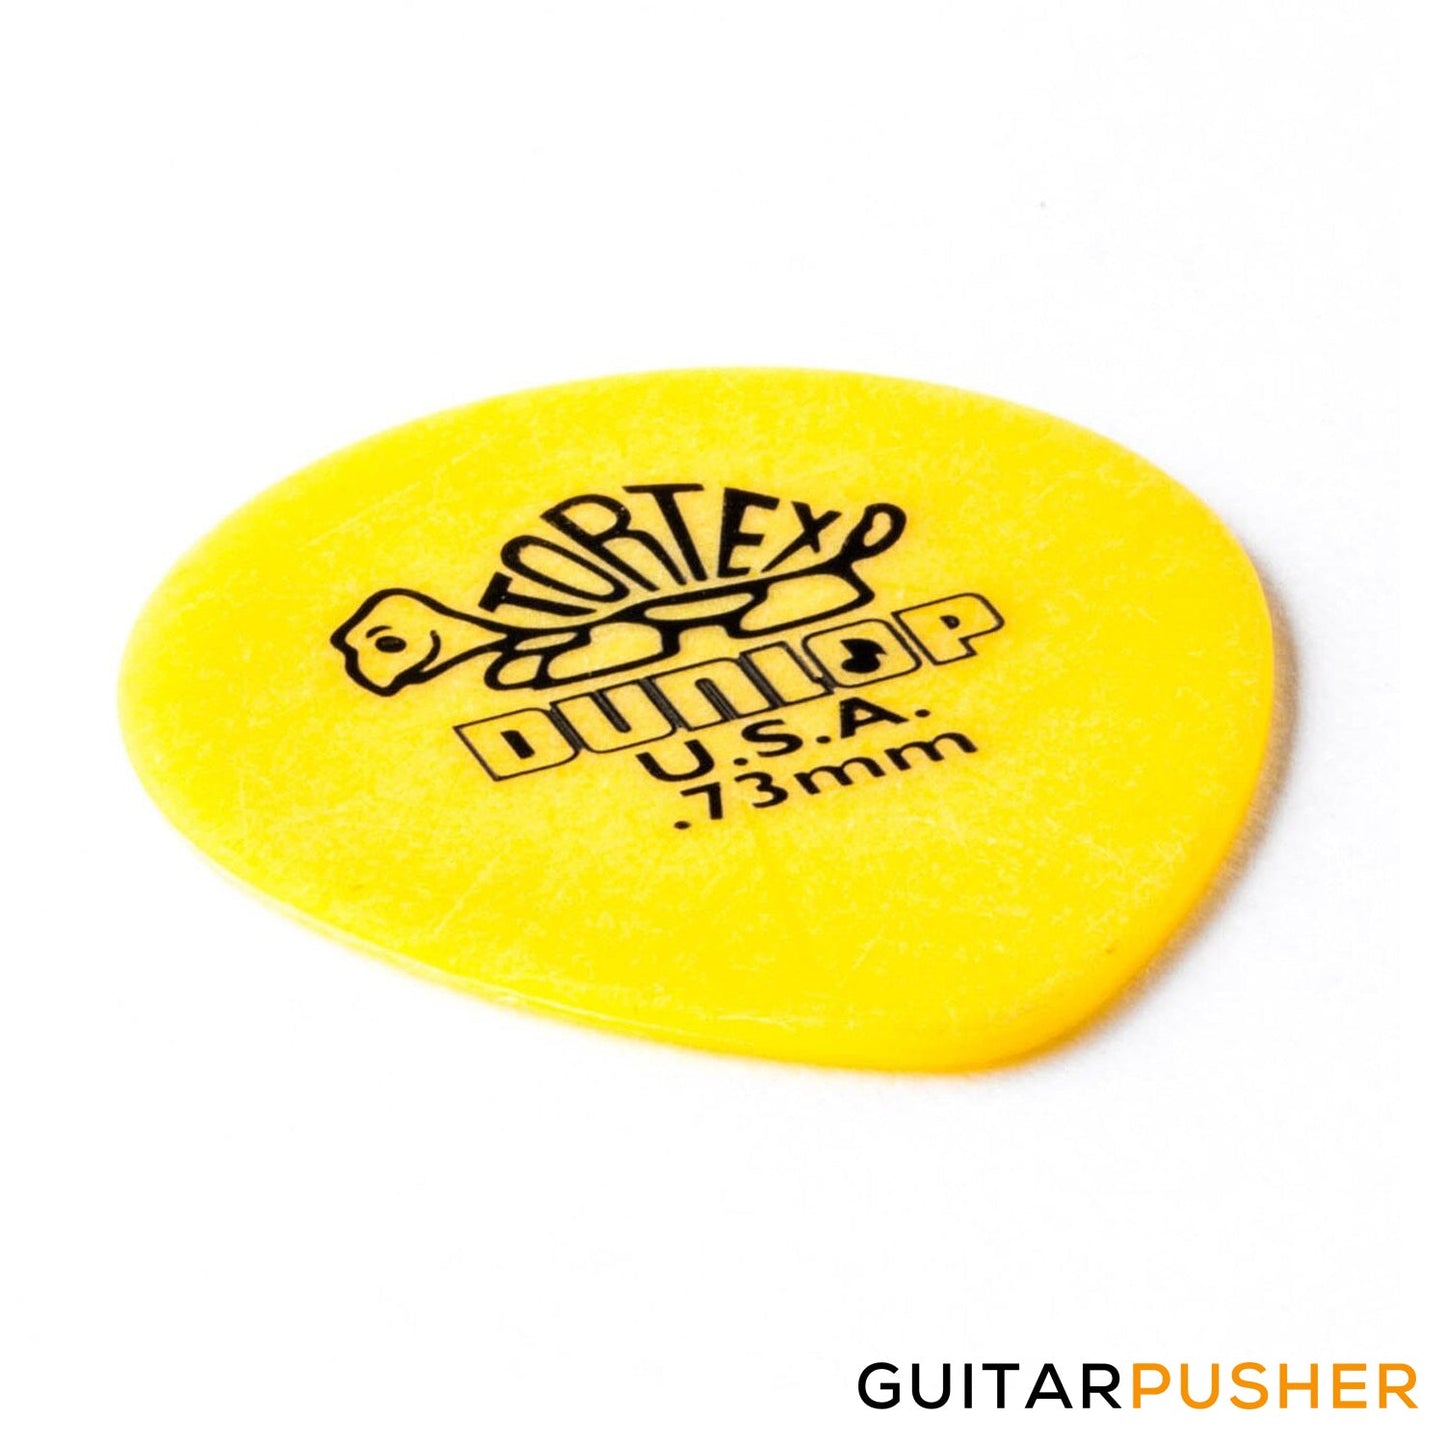 Dunlop Tortex Tear Drop Guitar Pick 413R - 0.73mm Yellow